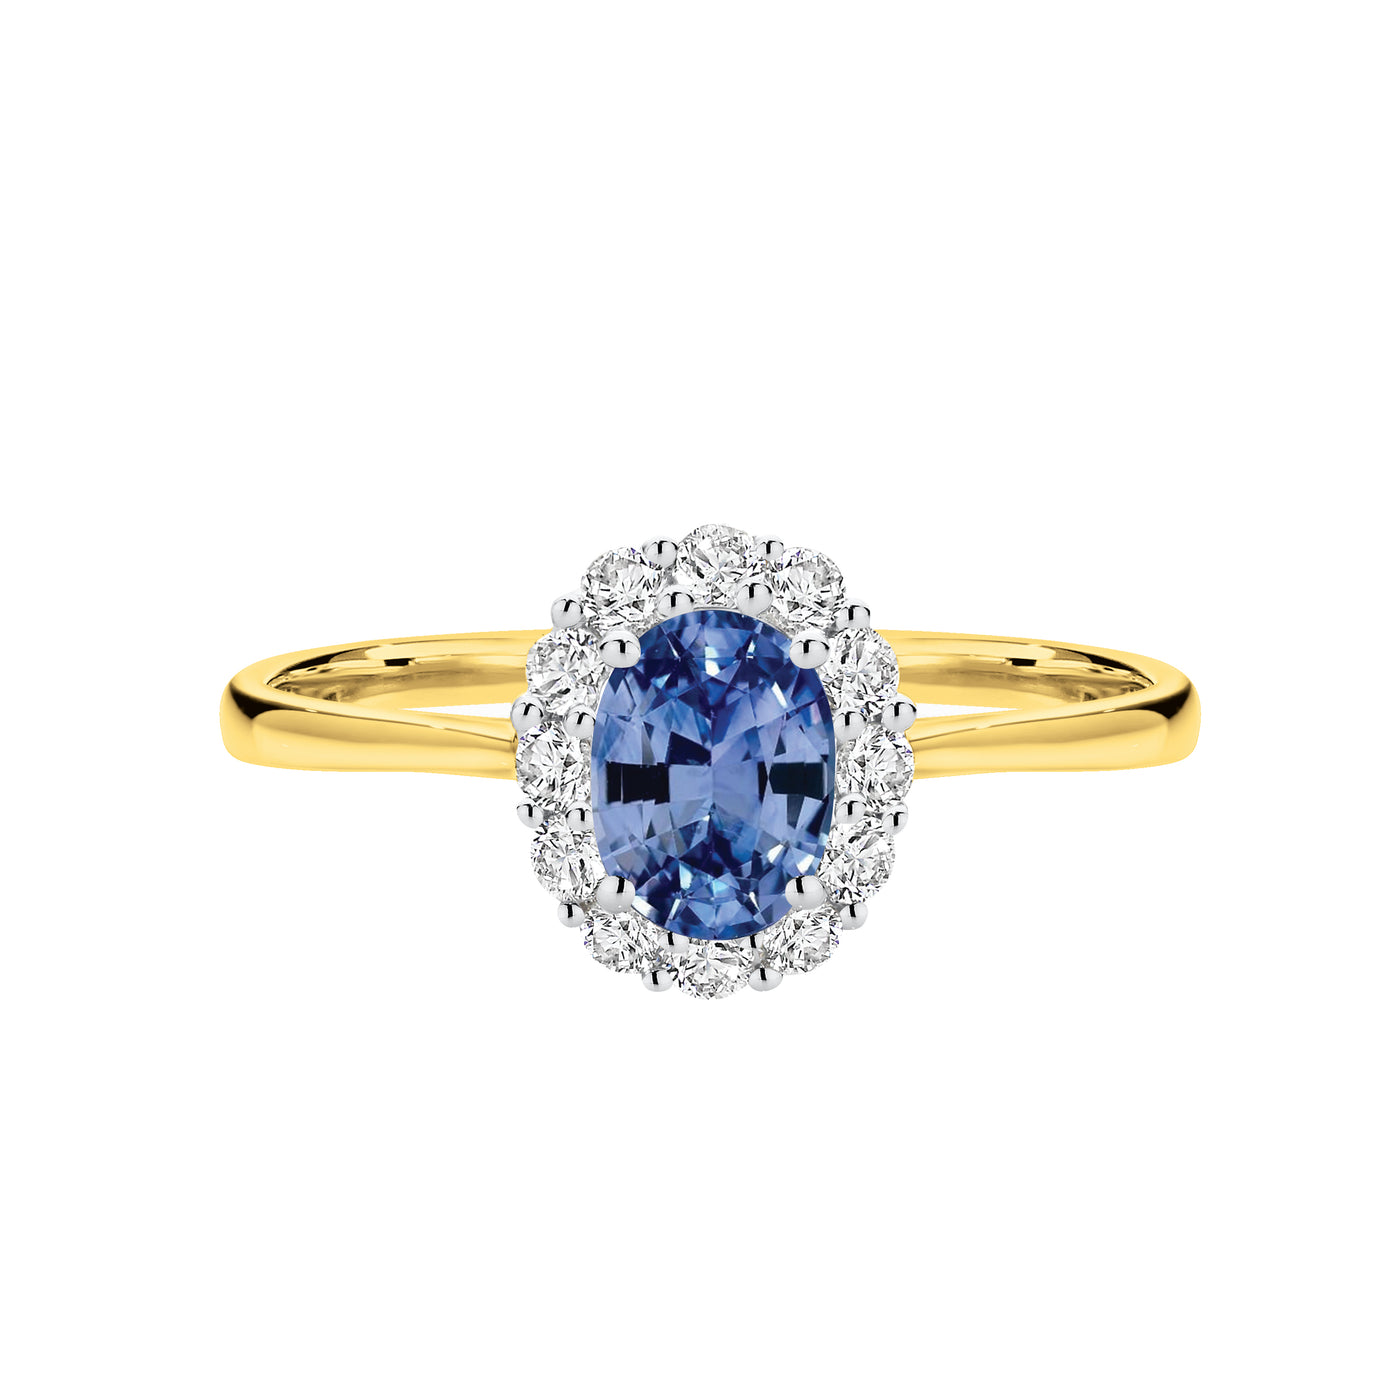 18ct White & Yellow Ceylon Sapphire & Diamond Ring